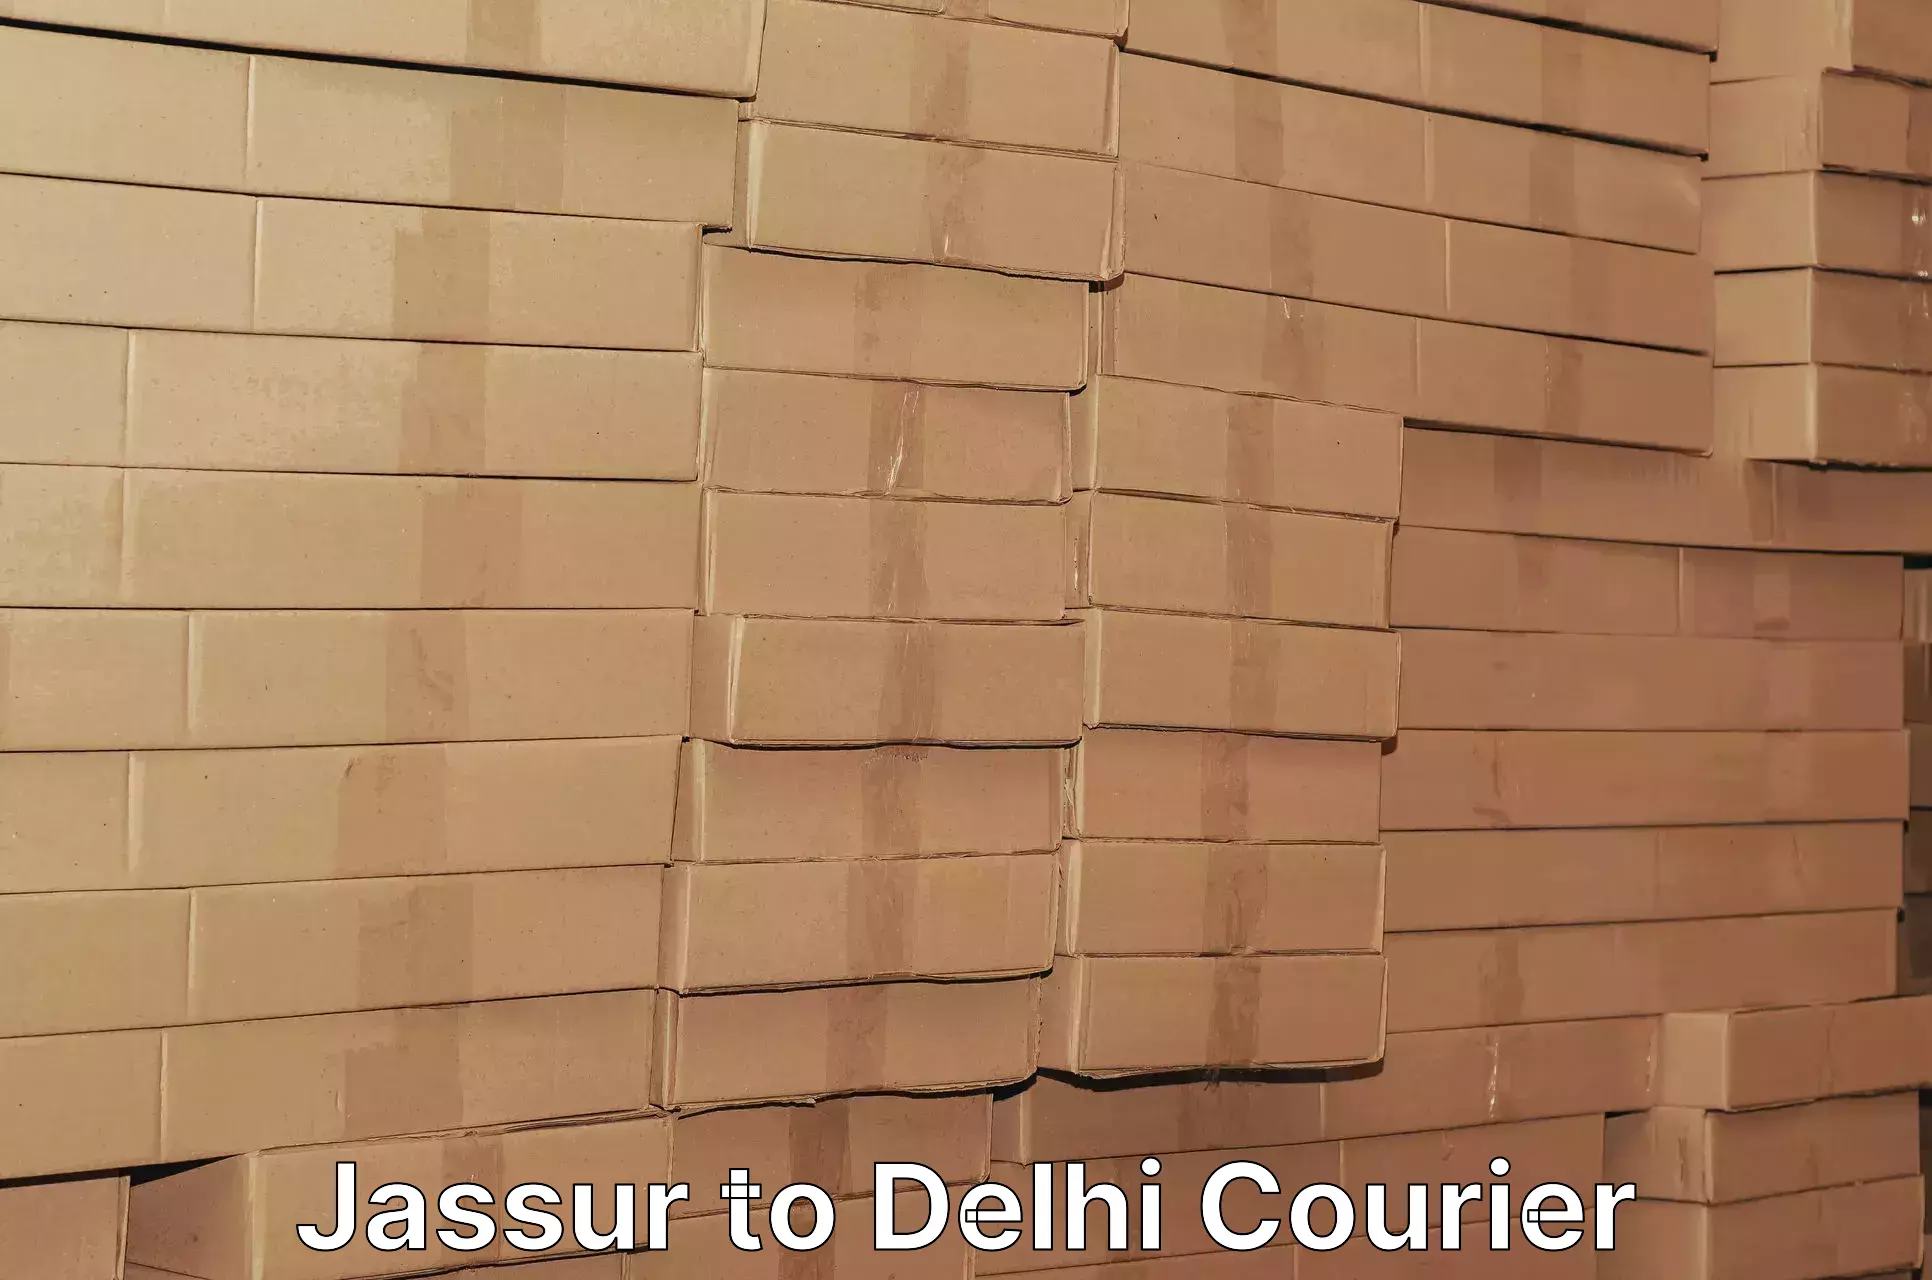 24/7 courier service Jassur to Jhilmil